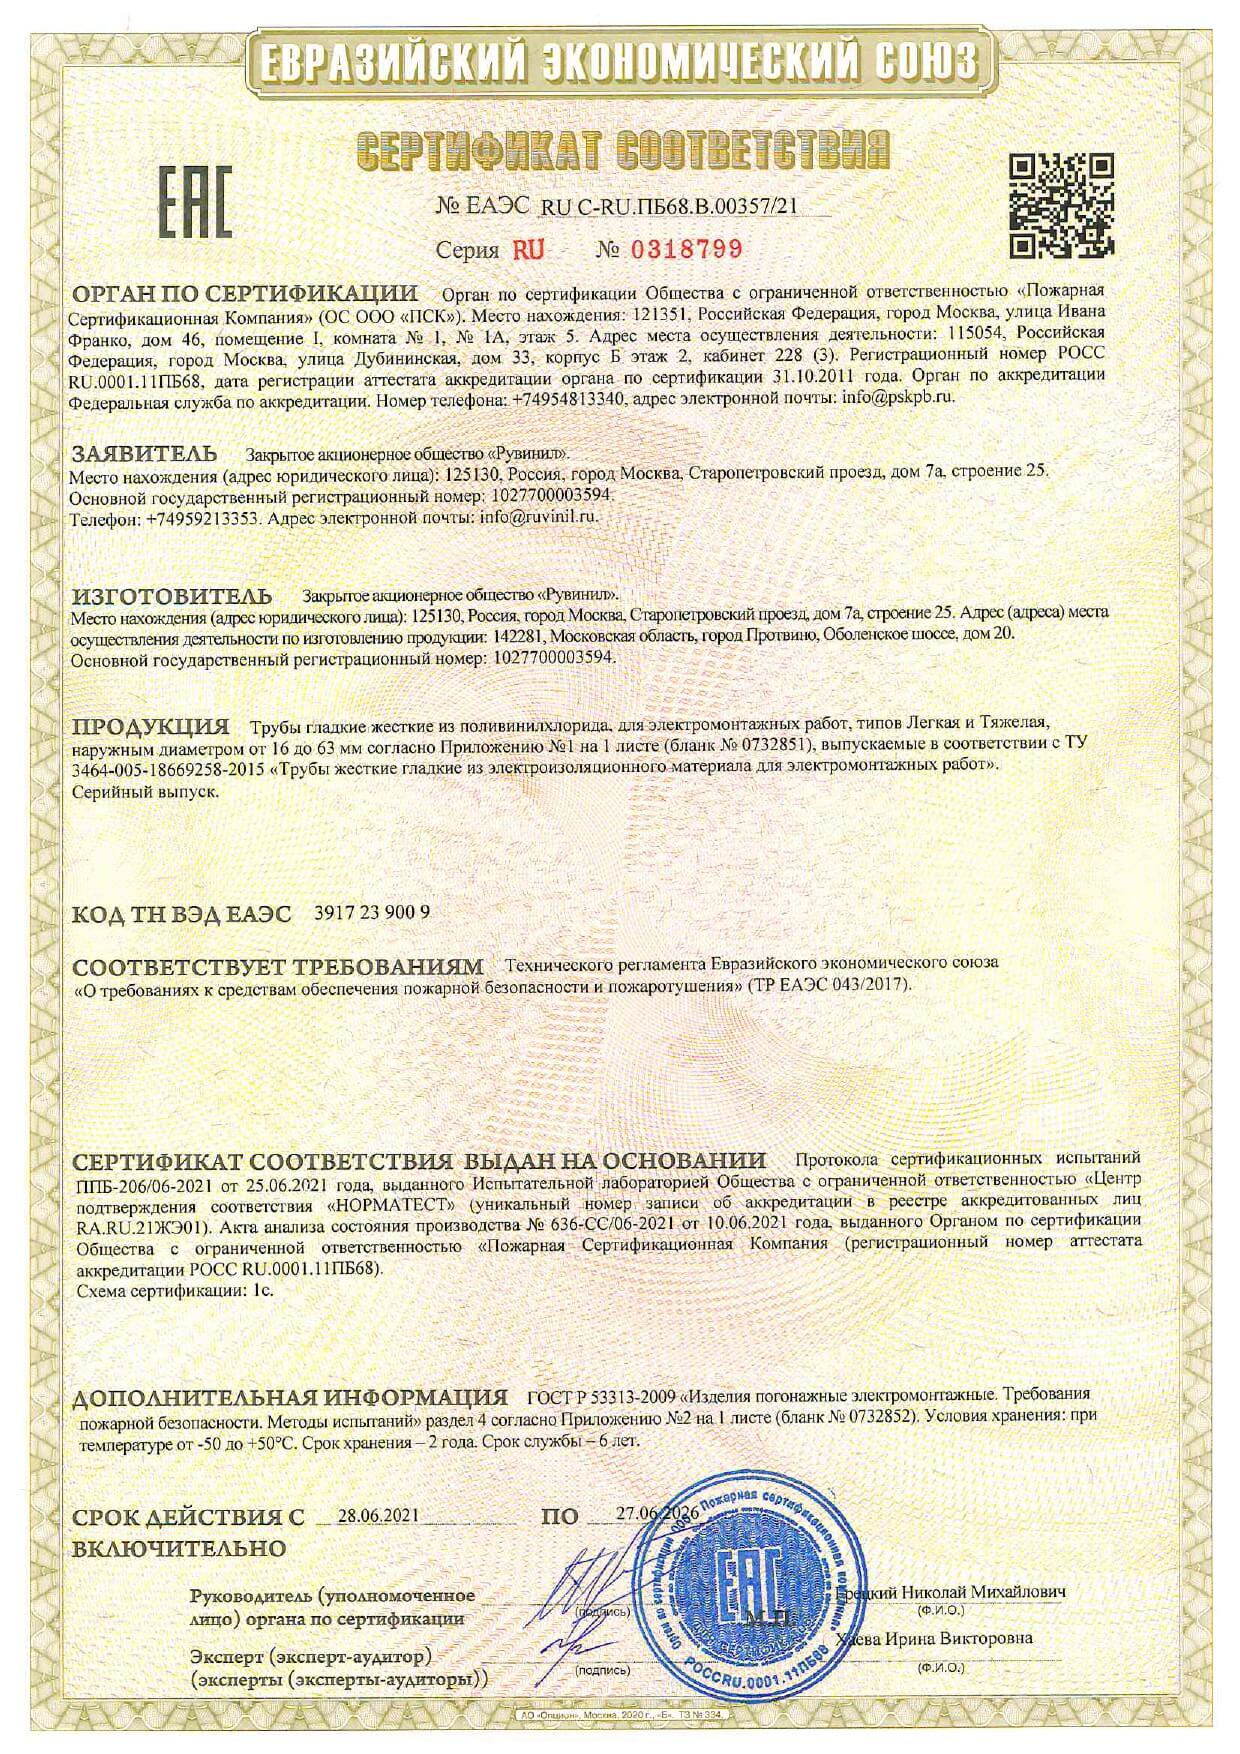 Сертификат соответствия - труба гладкая ПВХ